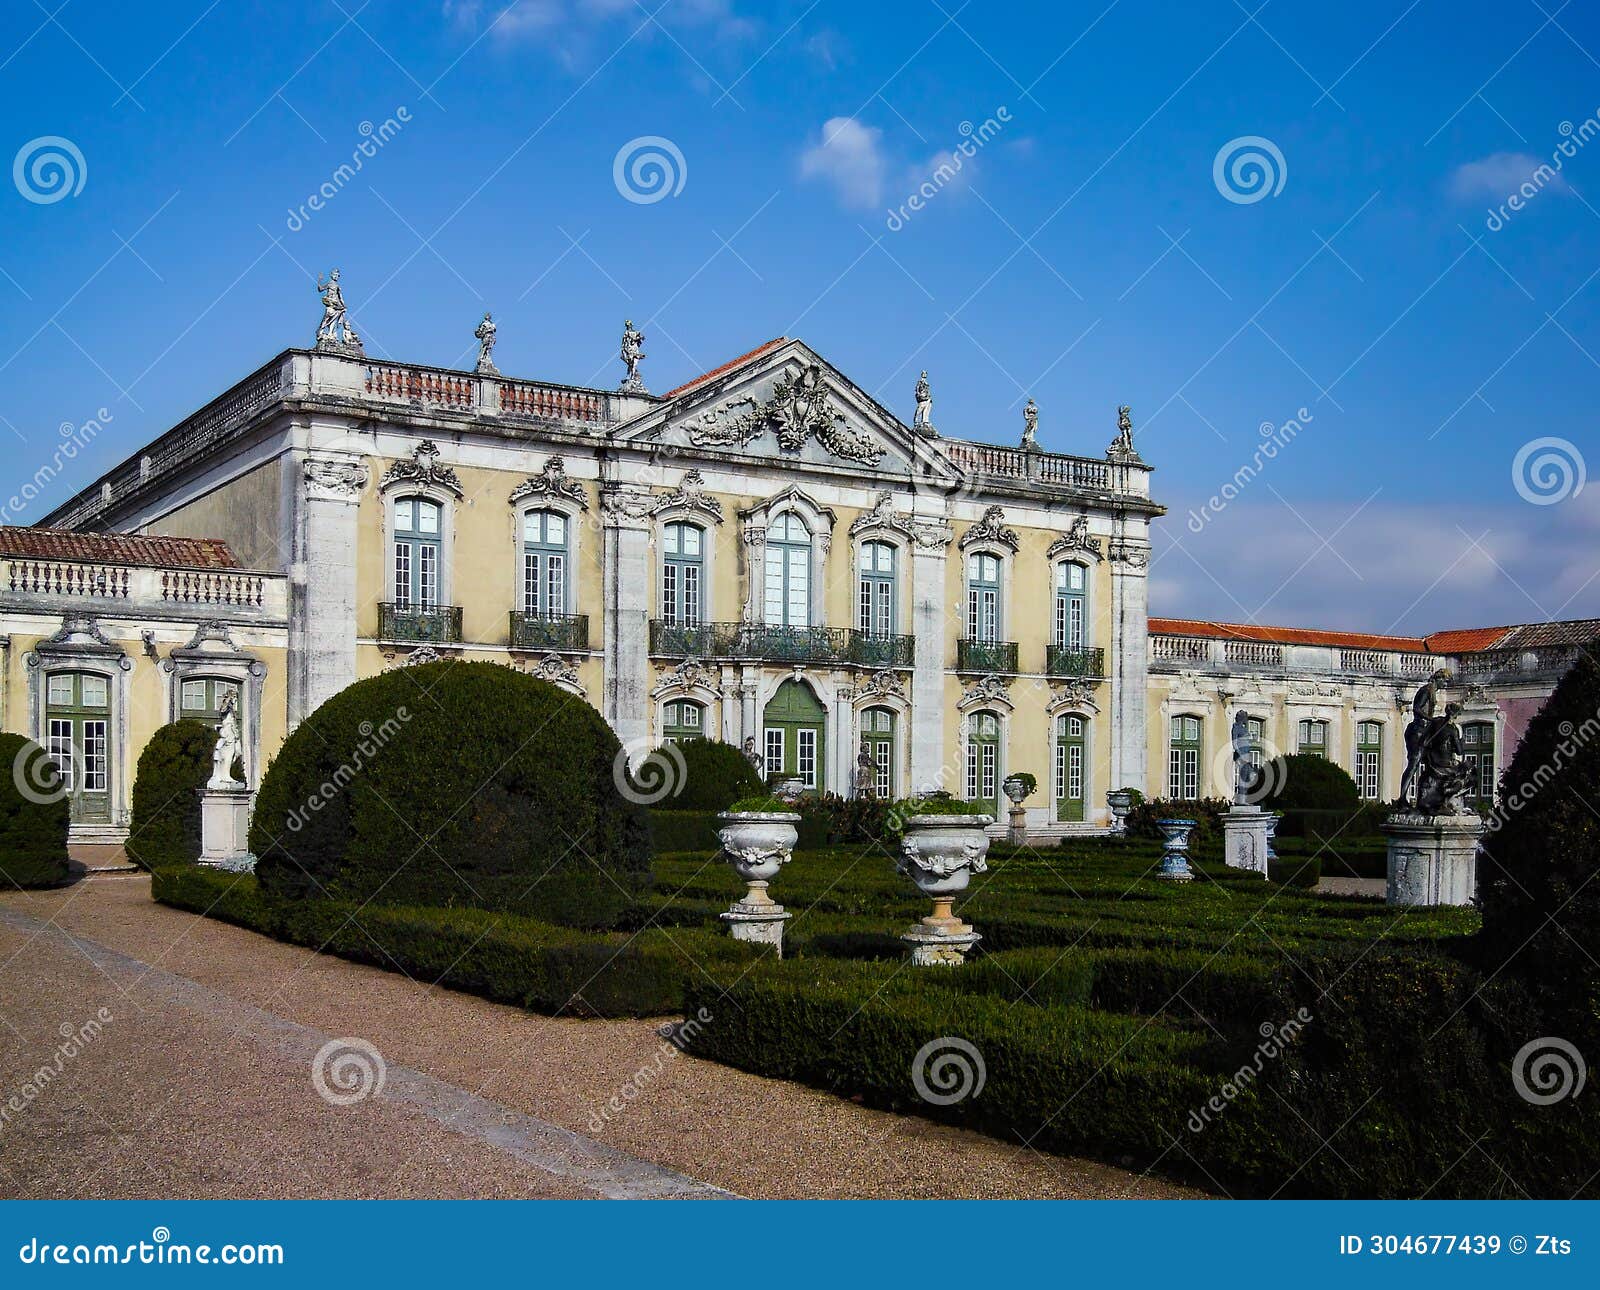 palacio nacional de queluz national palace. fachada das cerimonias or cerimonial facade seen from garden